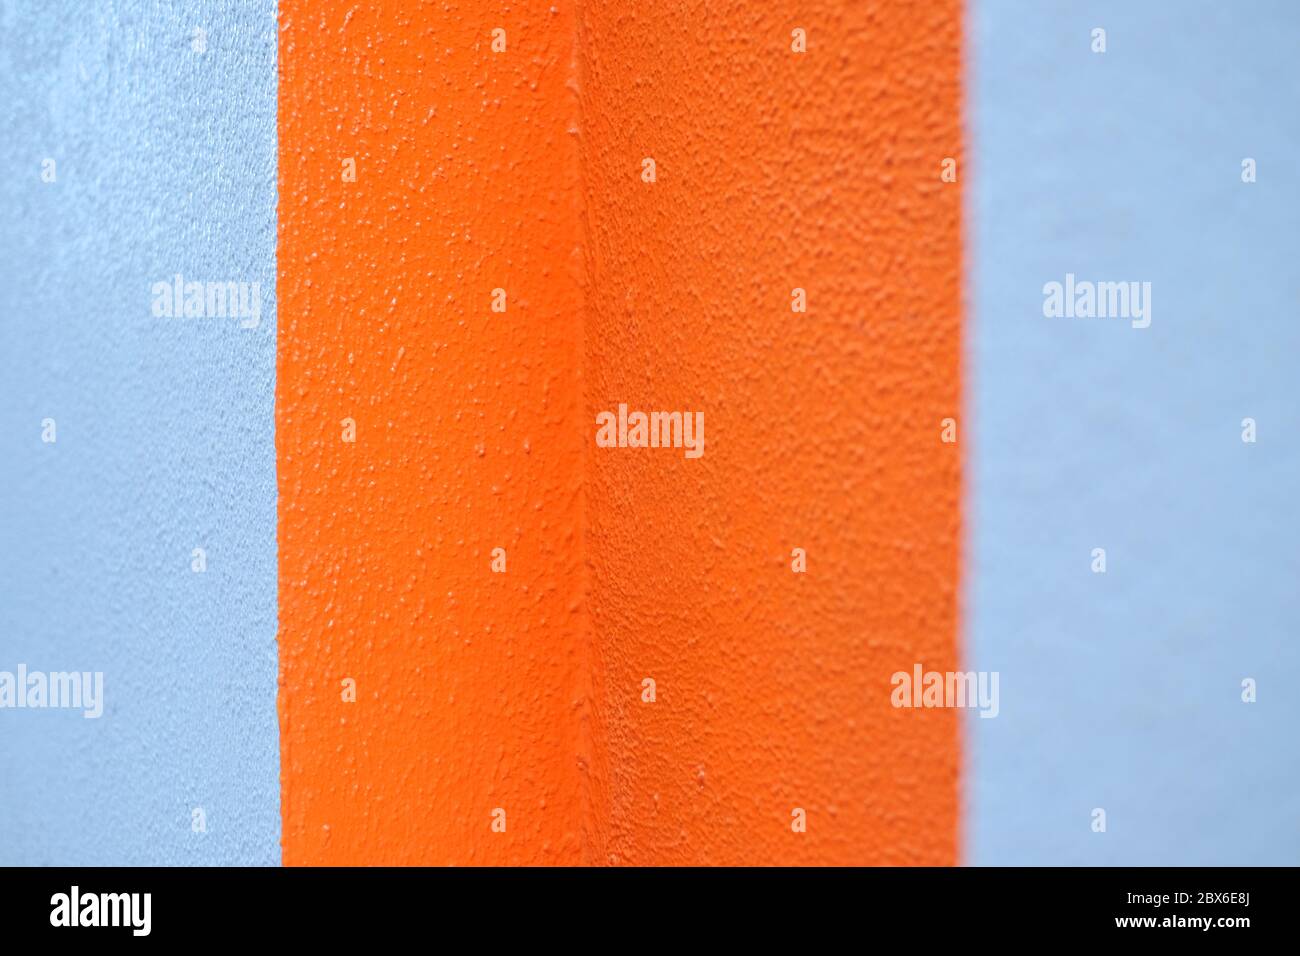 Bande di colore arancione e grigio su una parete, elemento grafico di sfondo vuoto. Foto Stock